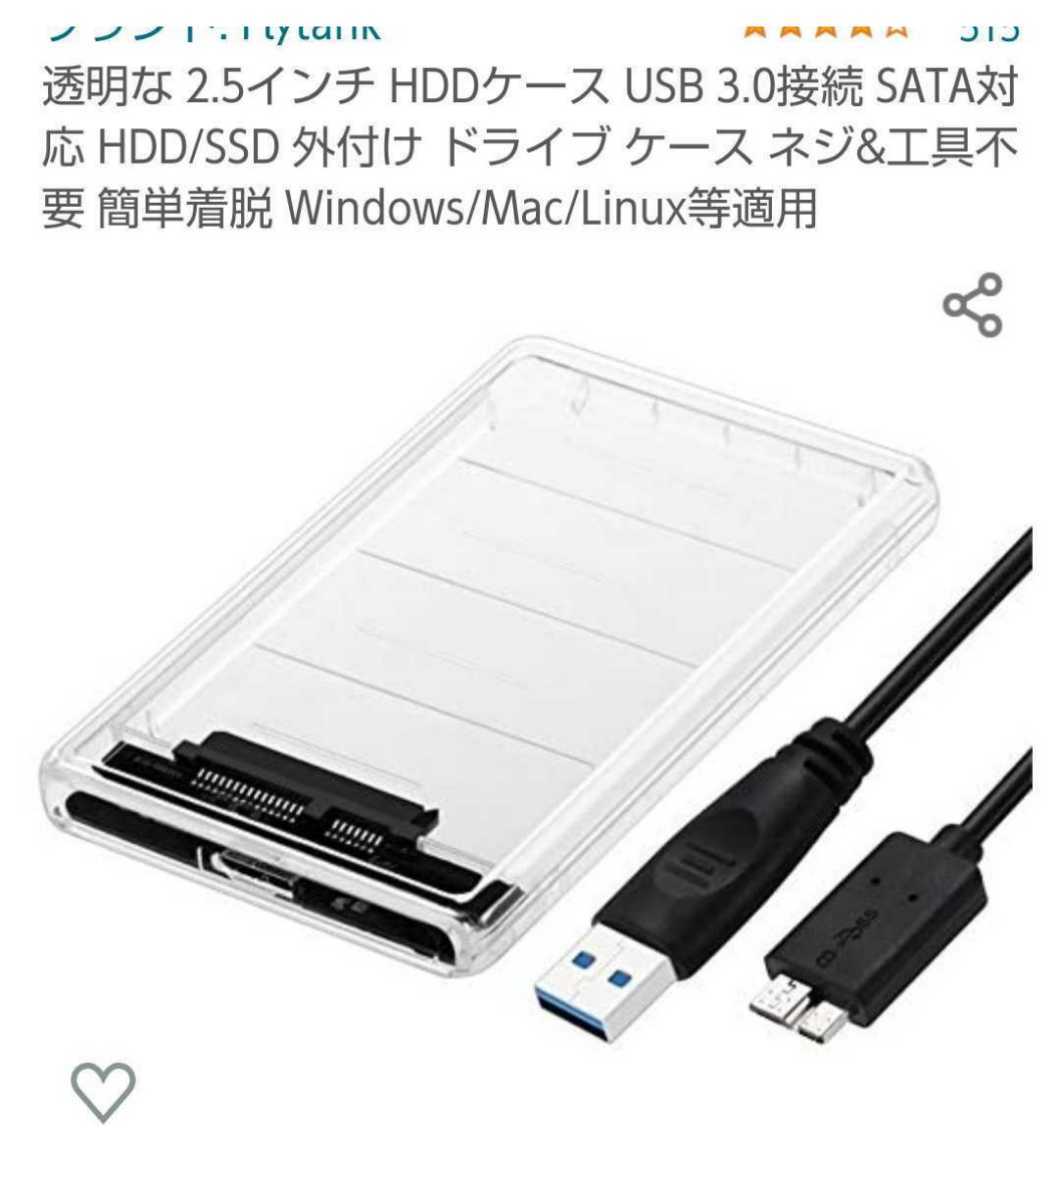 使用時間極少USB3.0外付けポータブルHDD(HDD 東芝製)